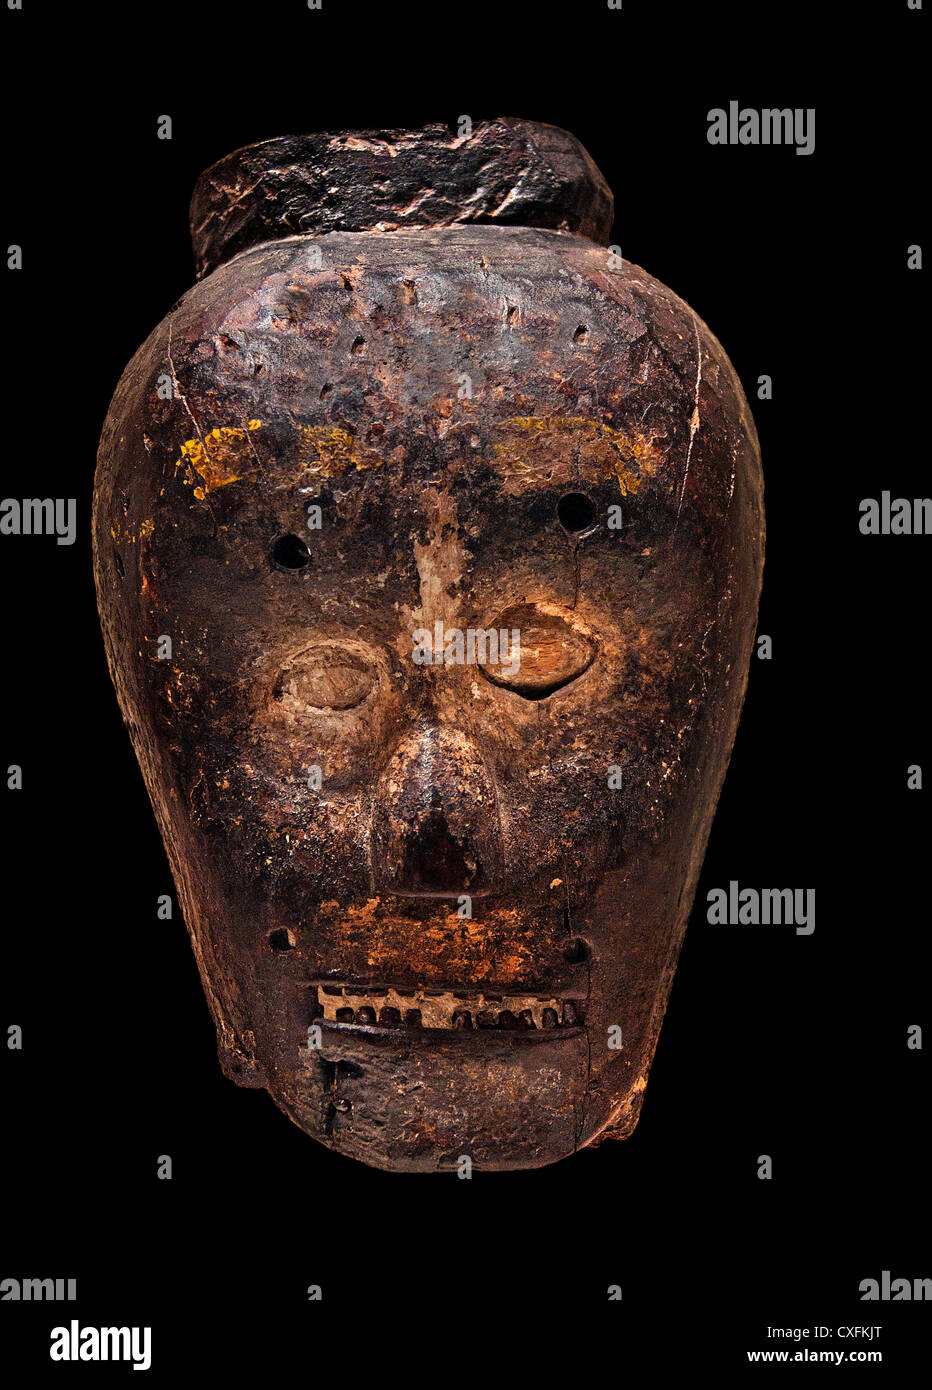 19e siècle masque République de Timor Leste Timor Oriental Culture douleur en fibre de bois, de la chaux sèche 22,9 cm Banque D'Images